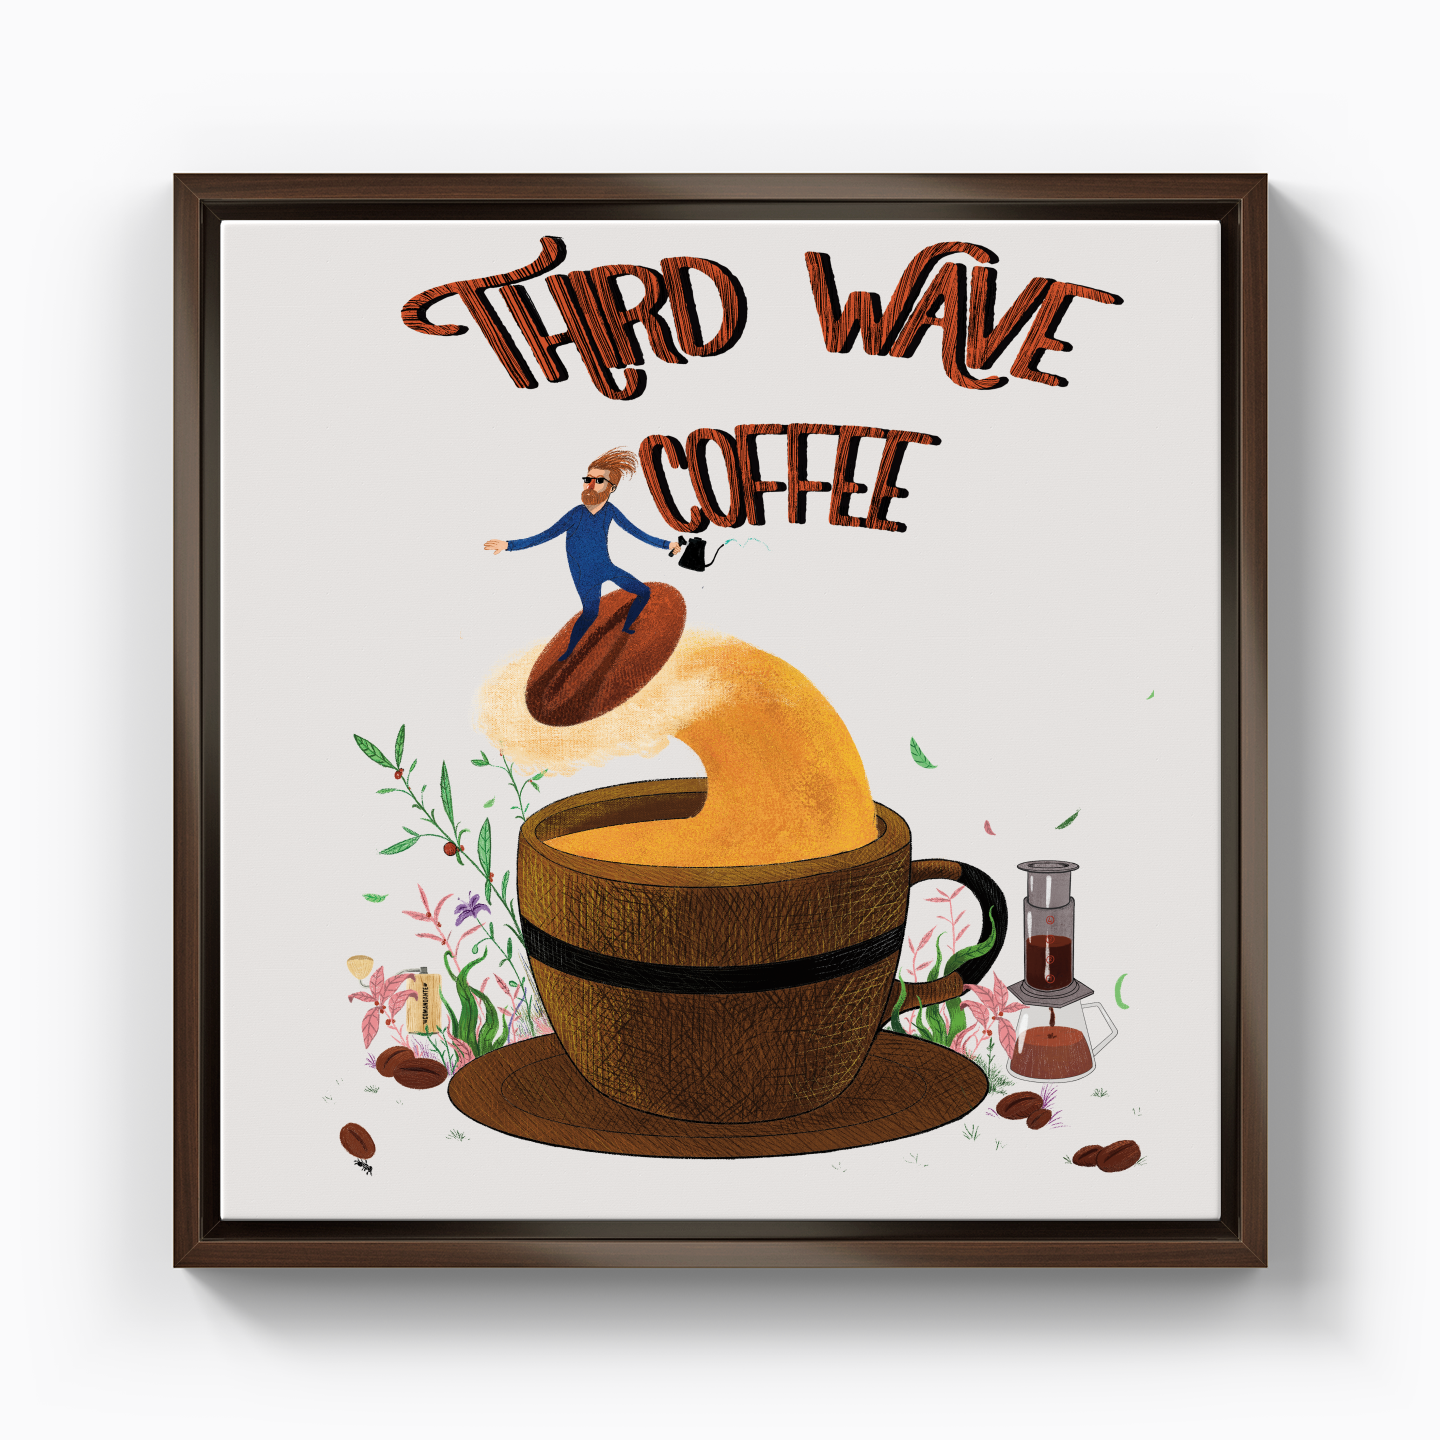 Third Wave Coffee - Kanvas Tablo